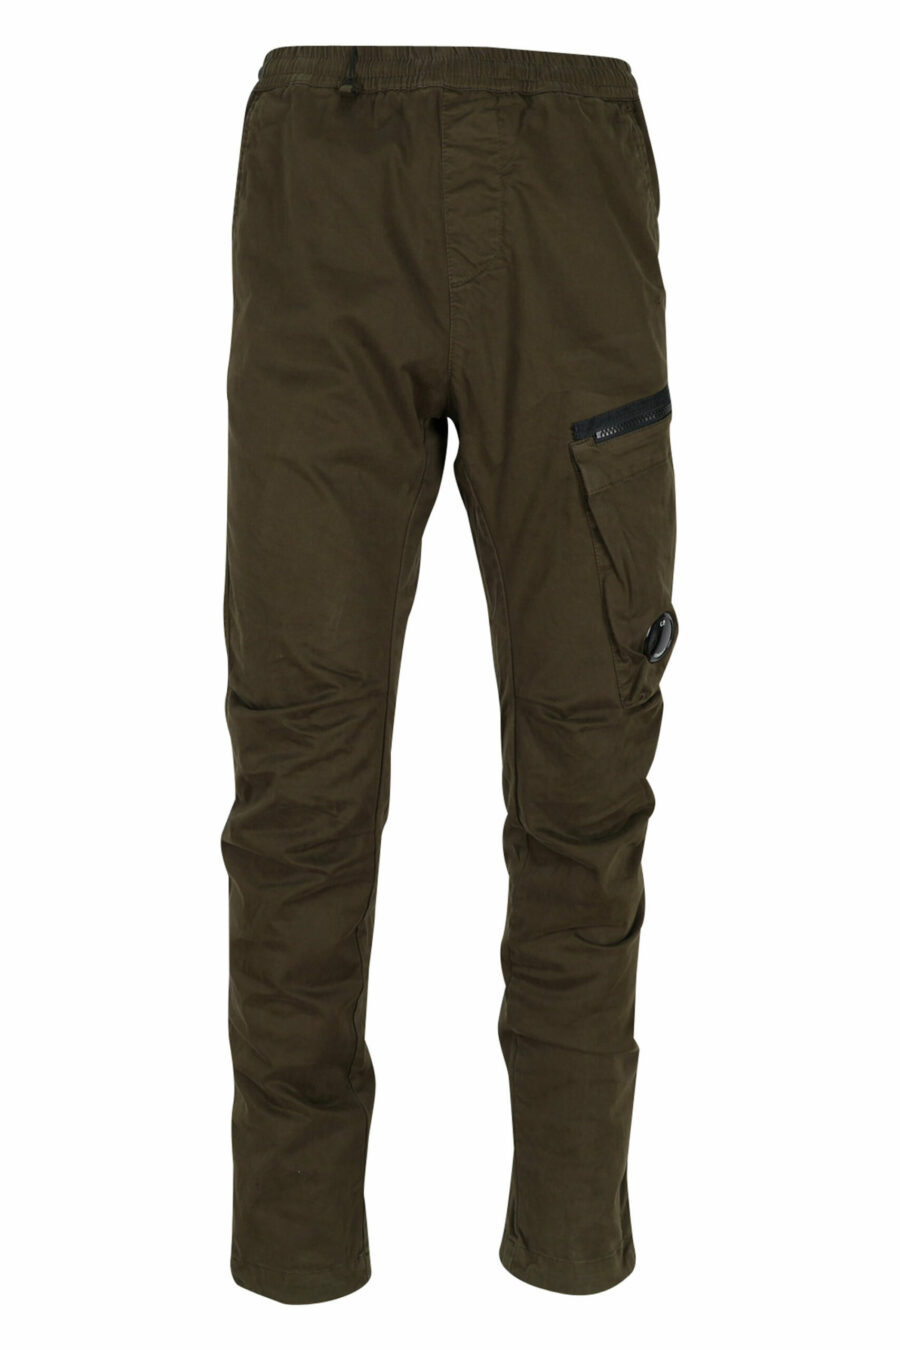 Pantalón verde militar de satén elástico con bolsillo lateral y logo lente - 7620943537833 scaled